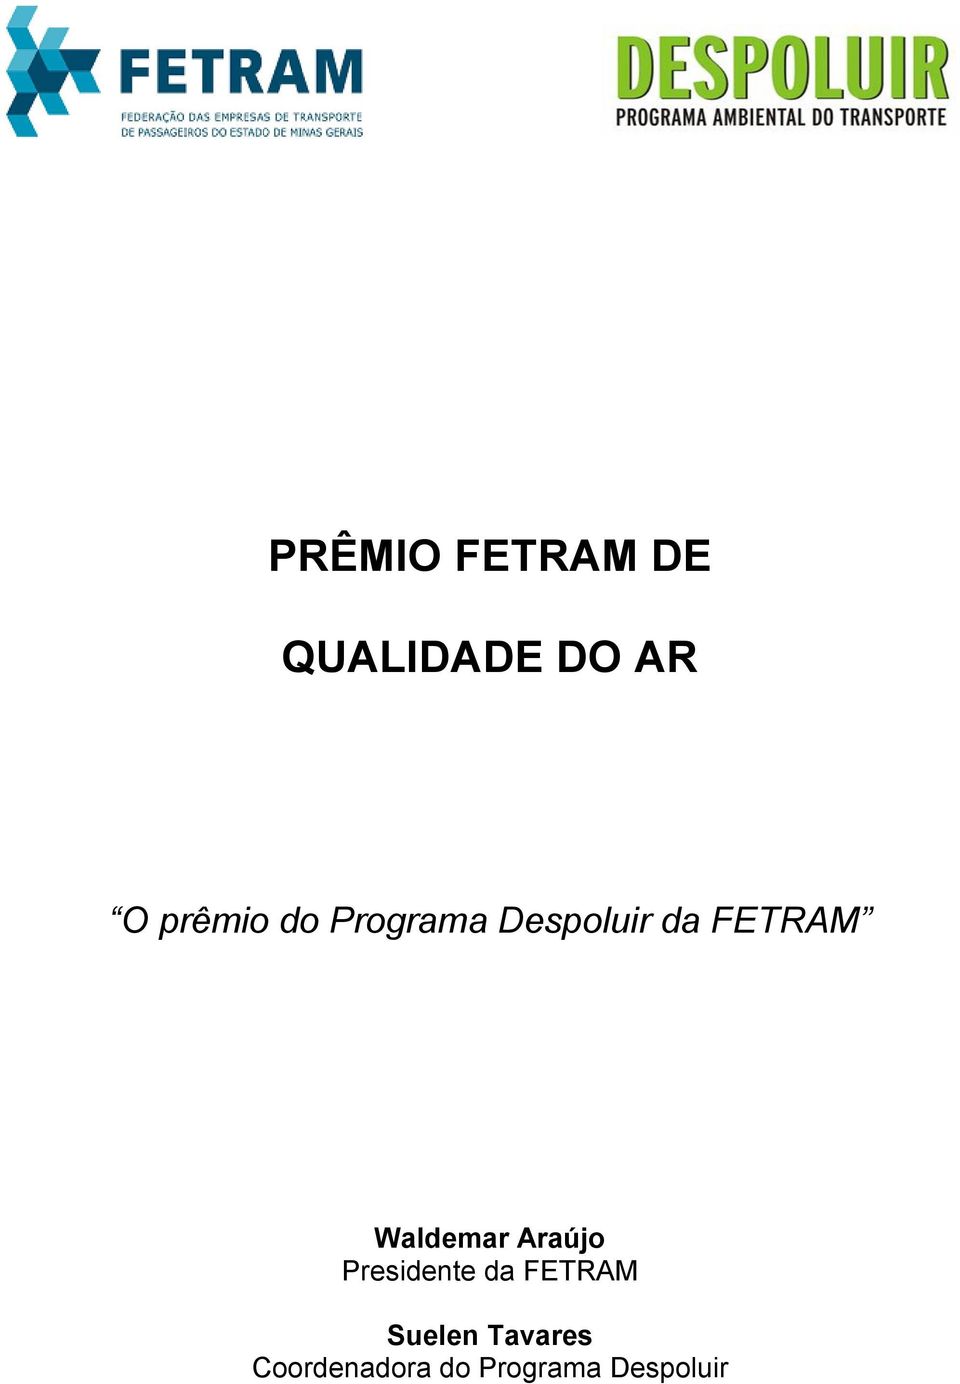 Waldemar Araújo Presidente da FETRAM